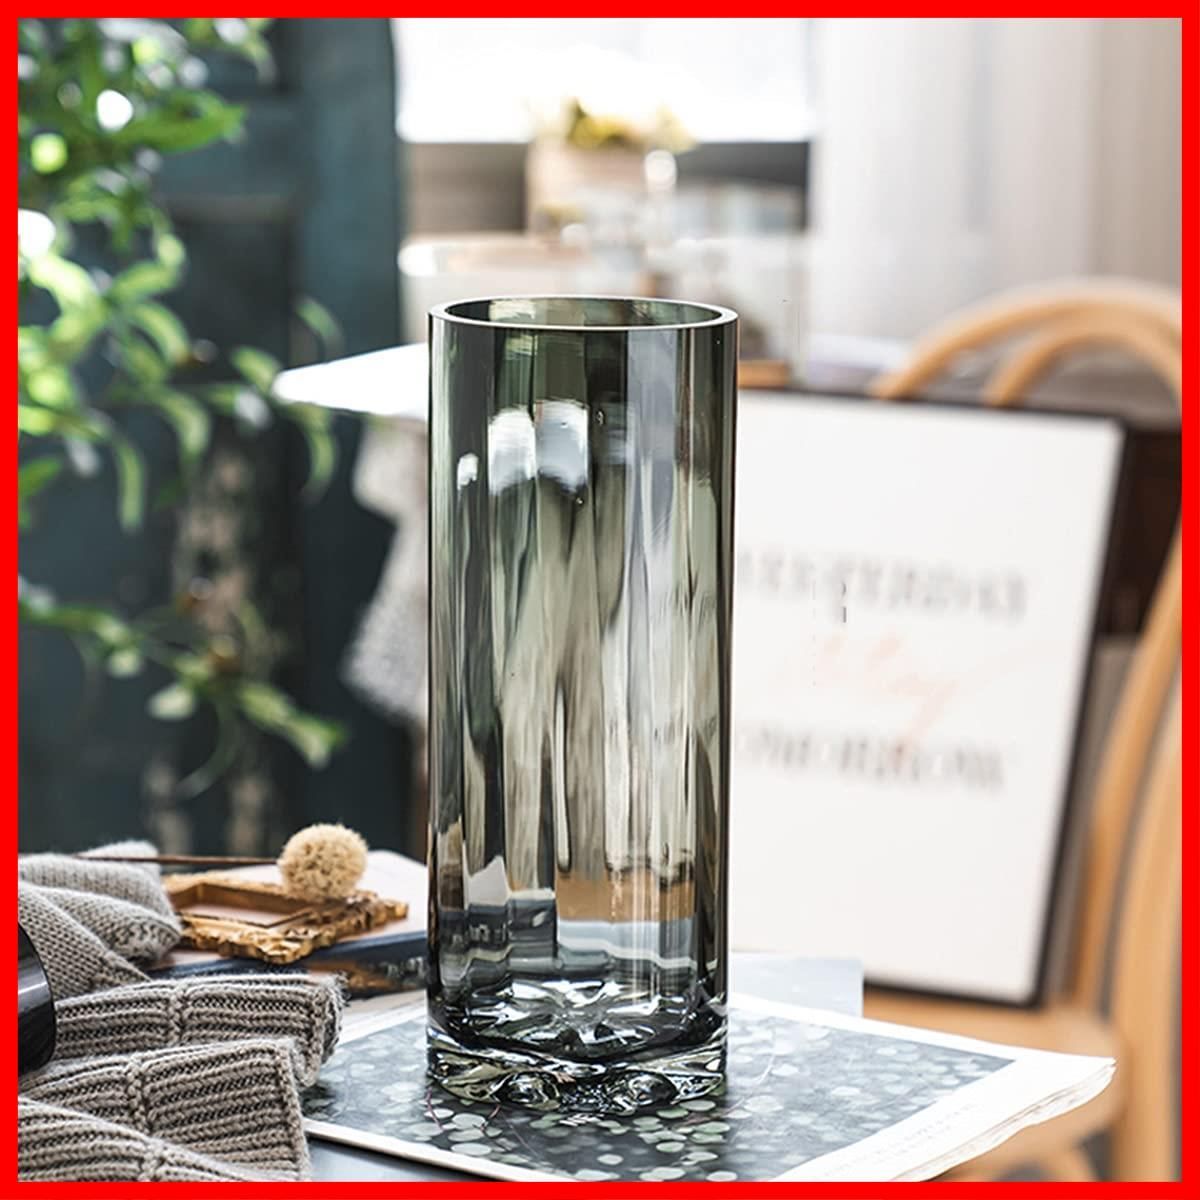 【新品定番】フラワーベース おしゃれ 花瓶 ガラスベース 花器 透明 大きい エレガント メタルグラスベース シェイプ 送料無料(一部地域除く) sik5031 花瓶